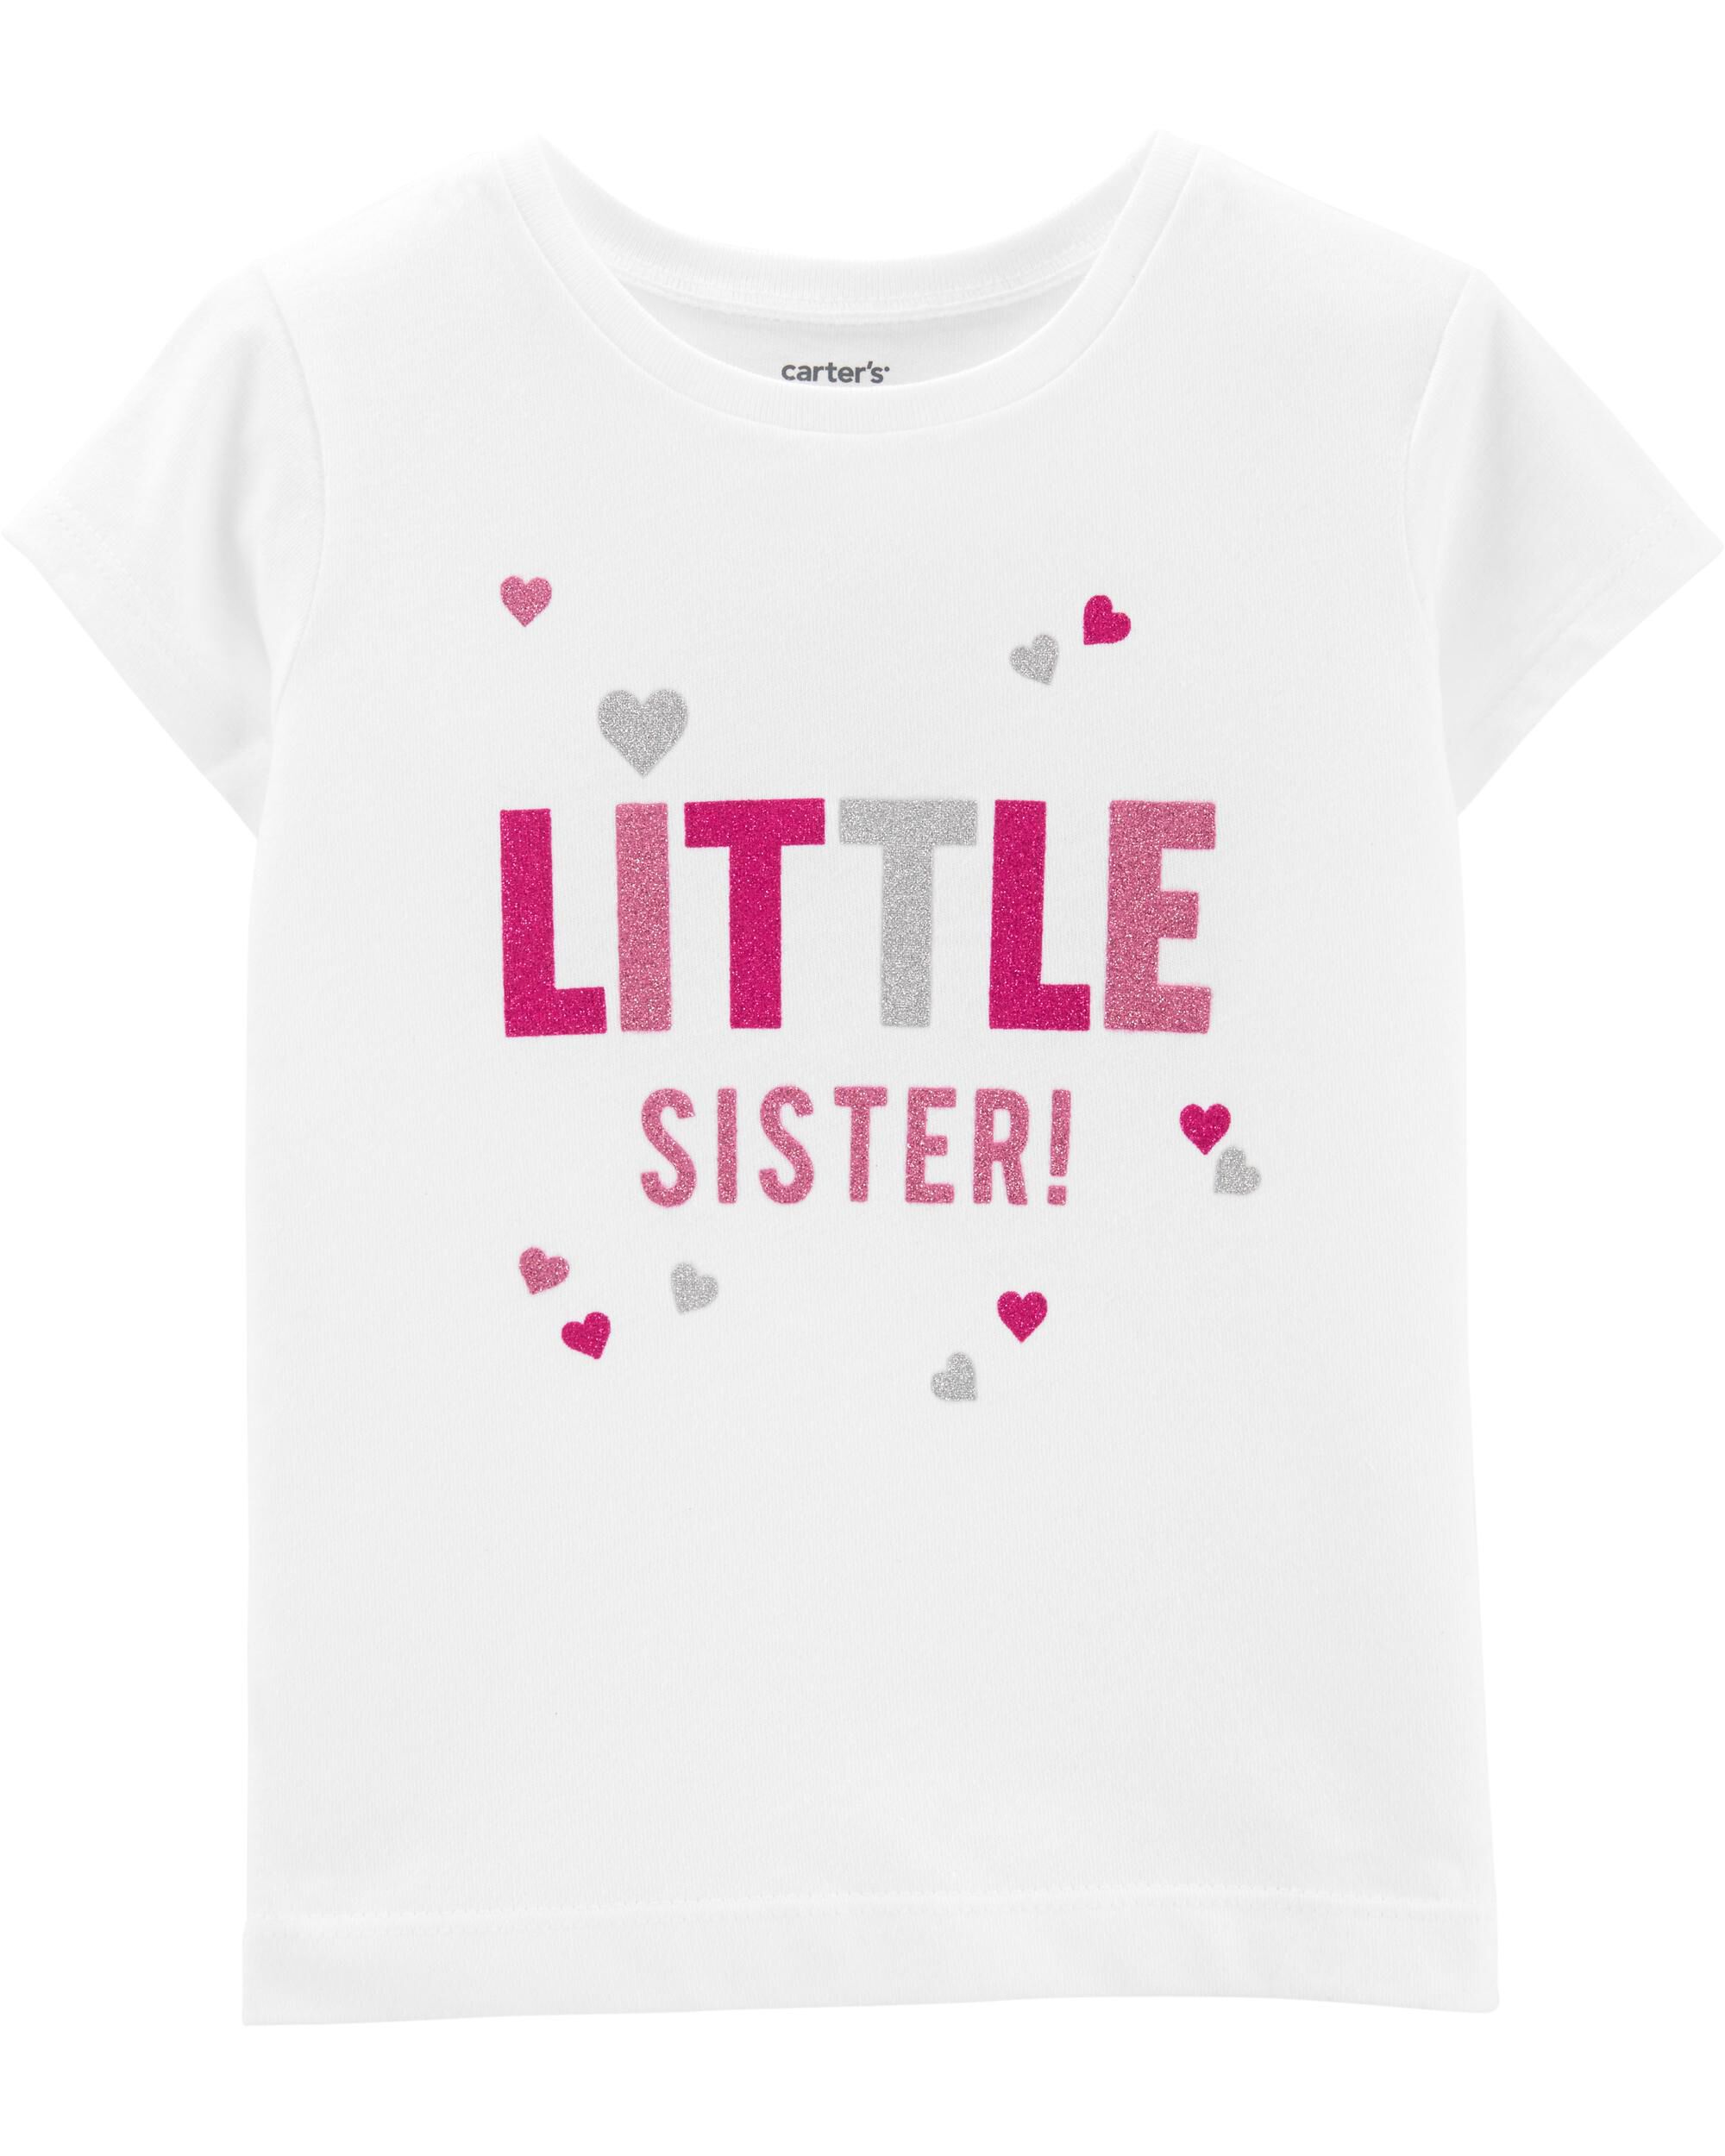 carters little sister shirt